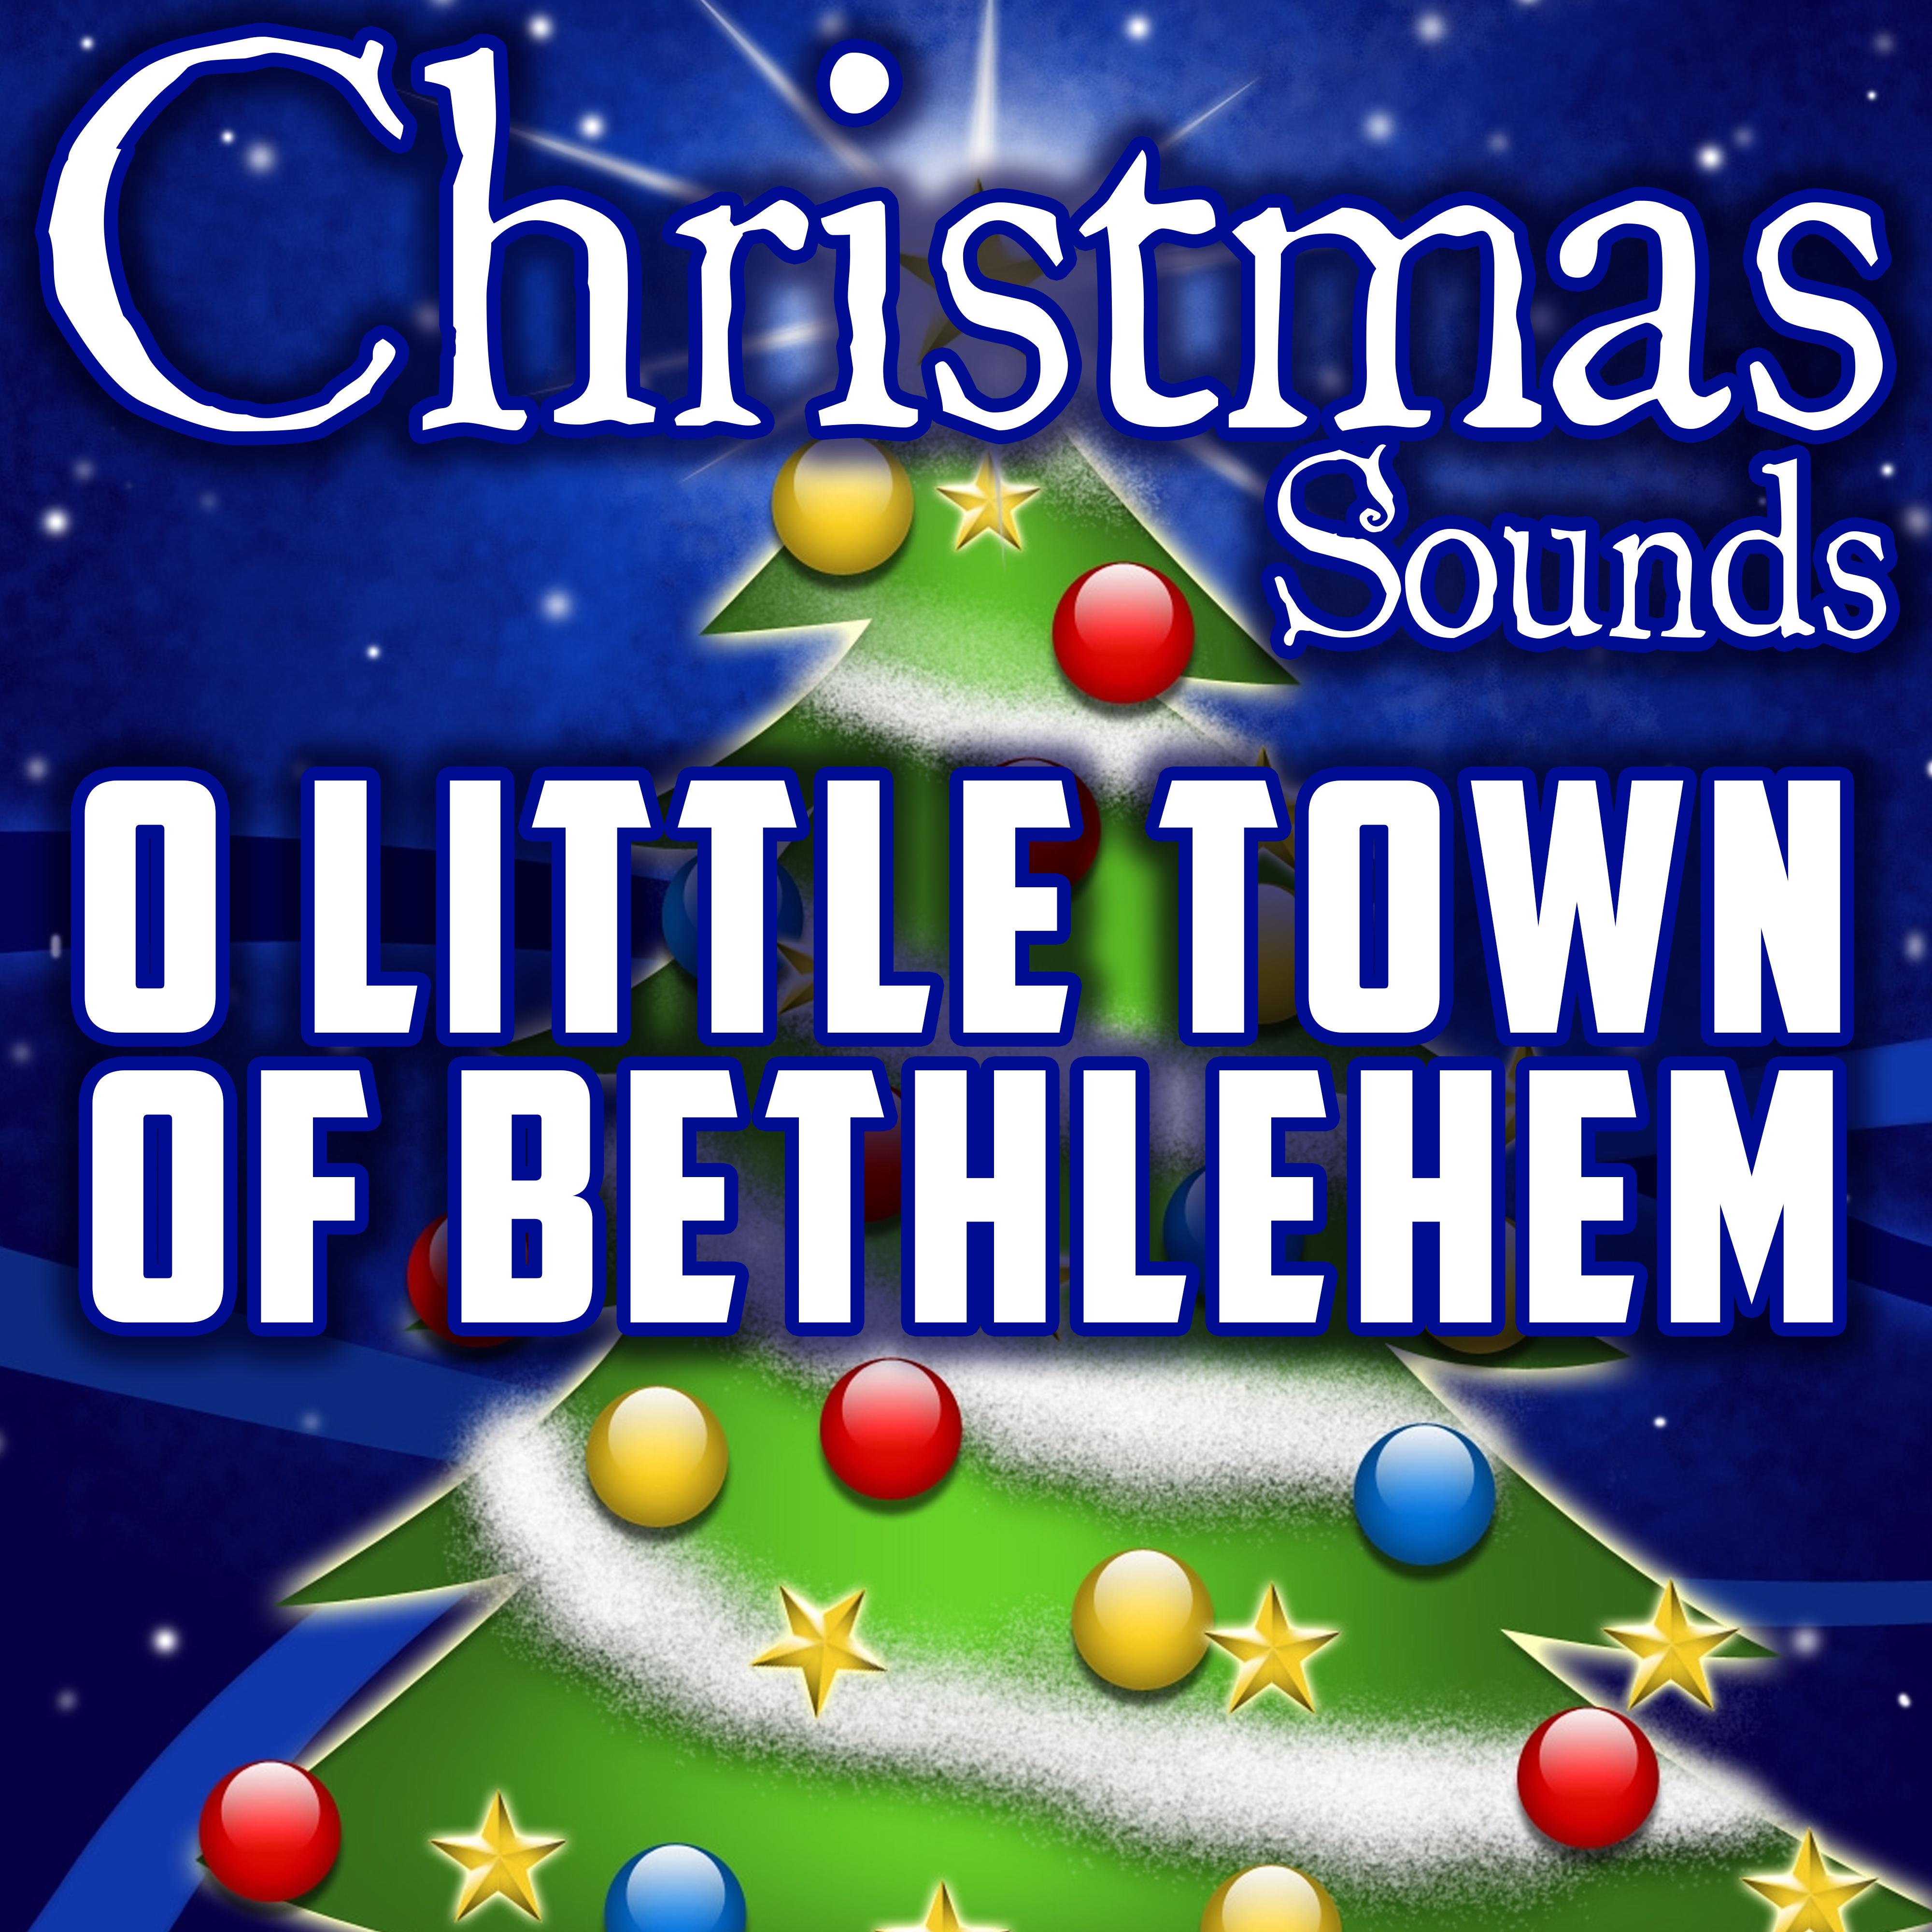 O Little Town of Bethlehem